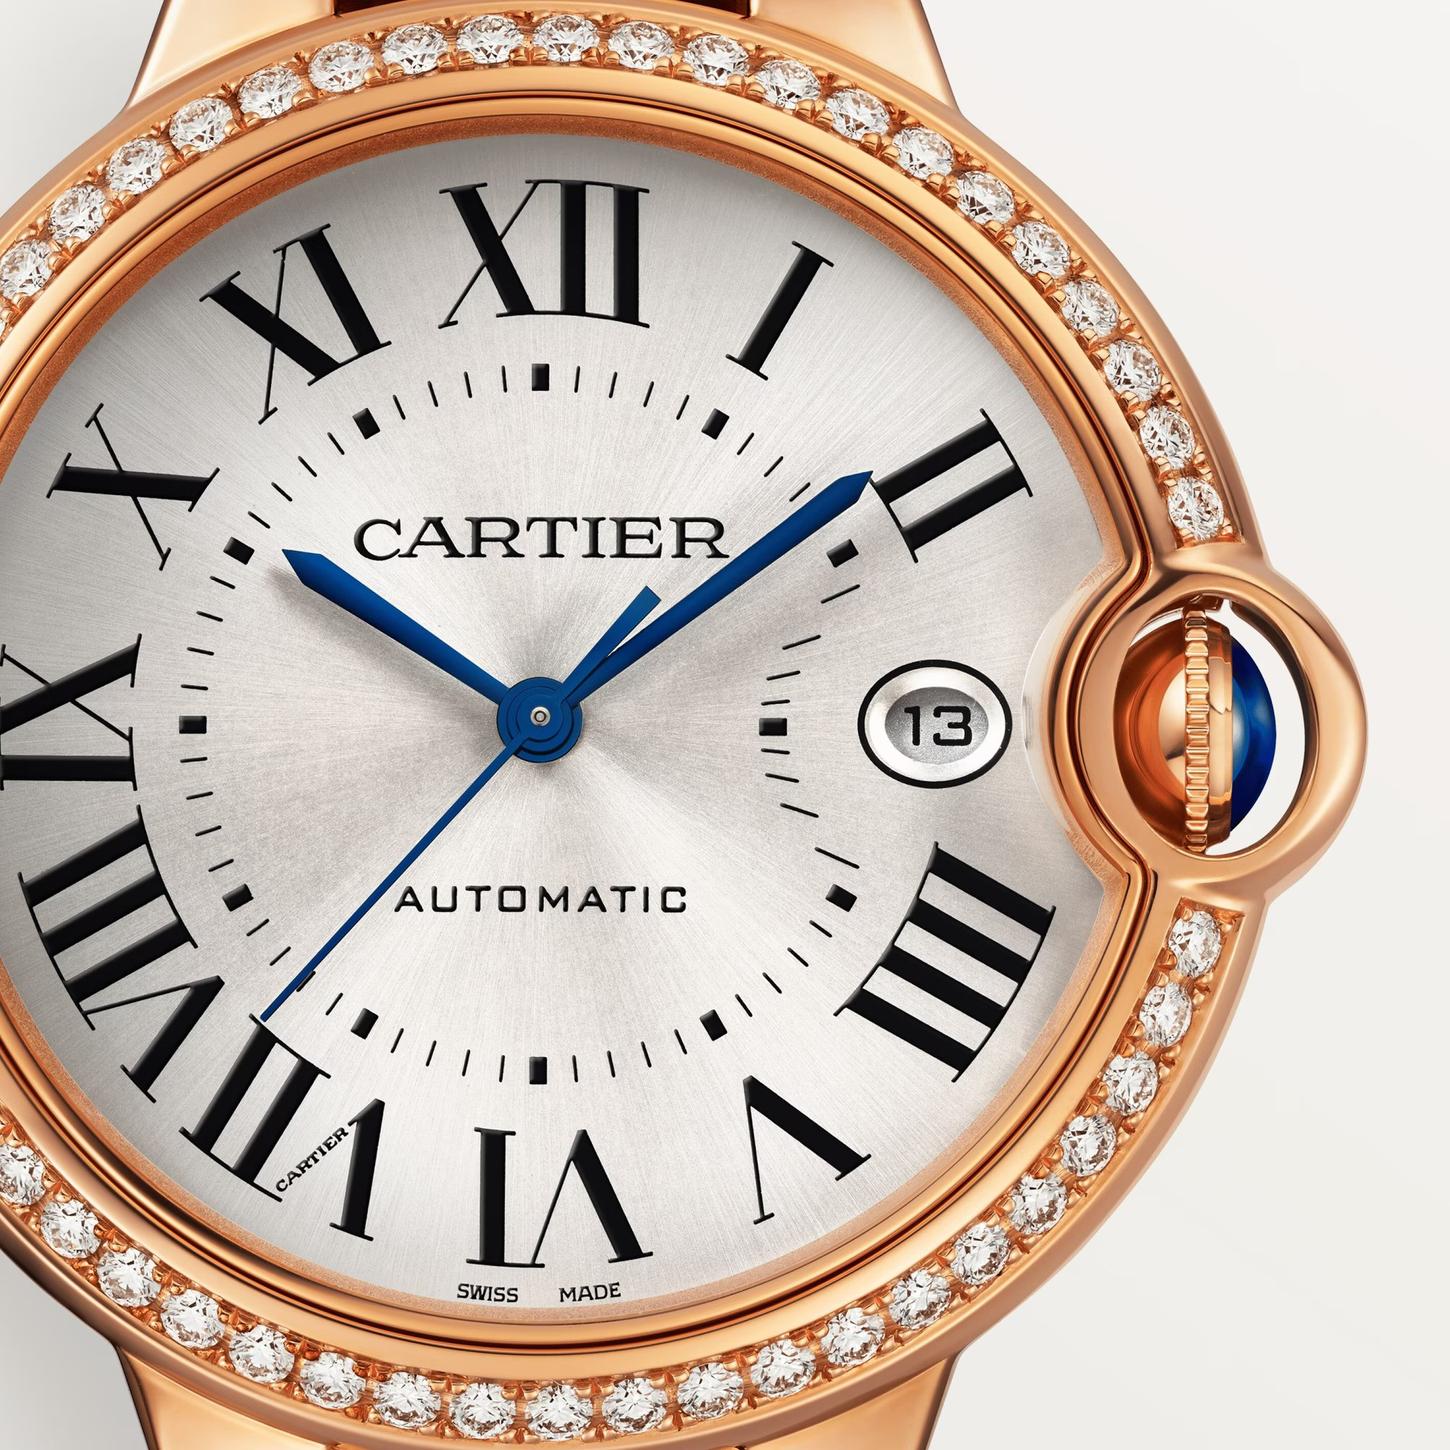 Ballon Bleu de Cartier Watch in Rose Gold with Diamond, 40mm 0